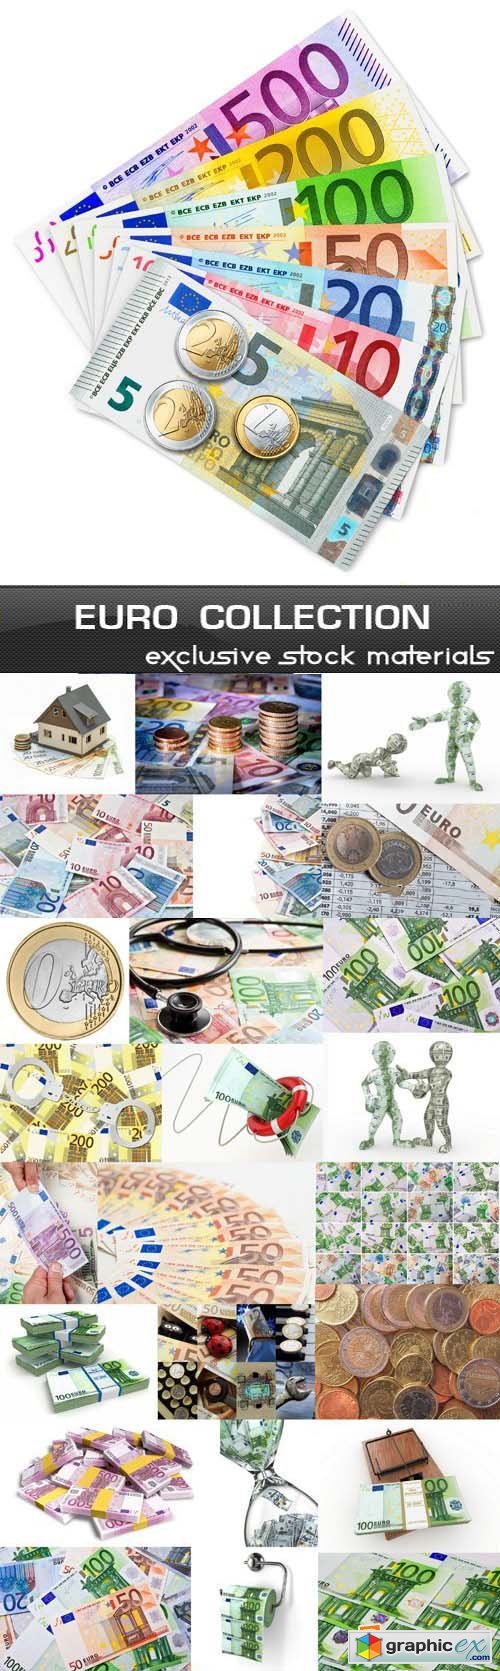 Euro Collection 25xJPG